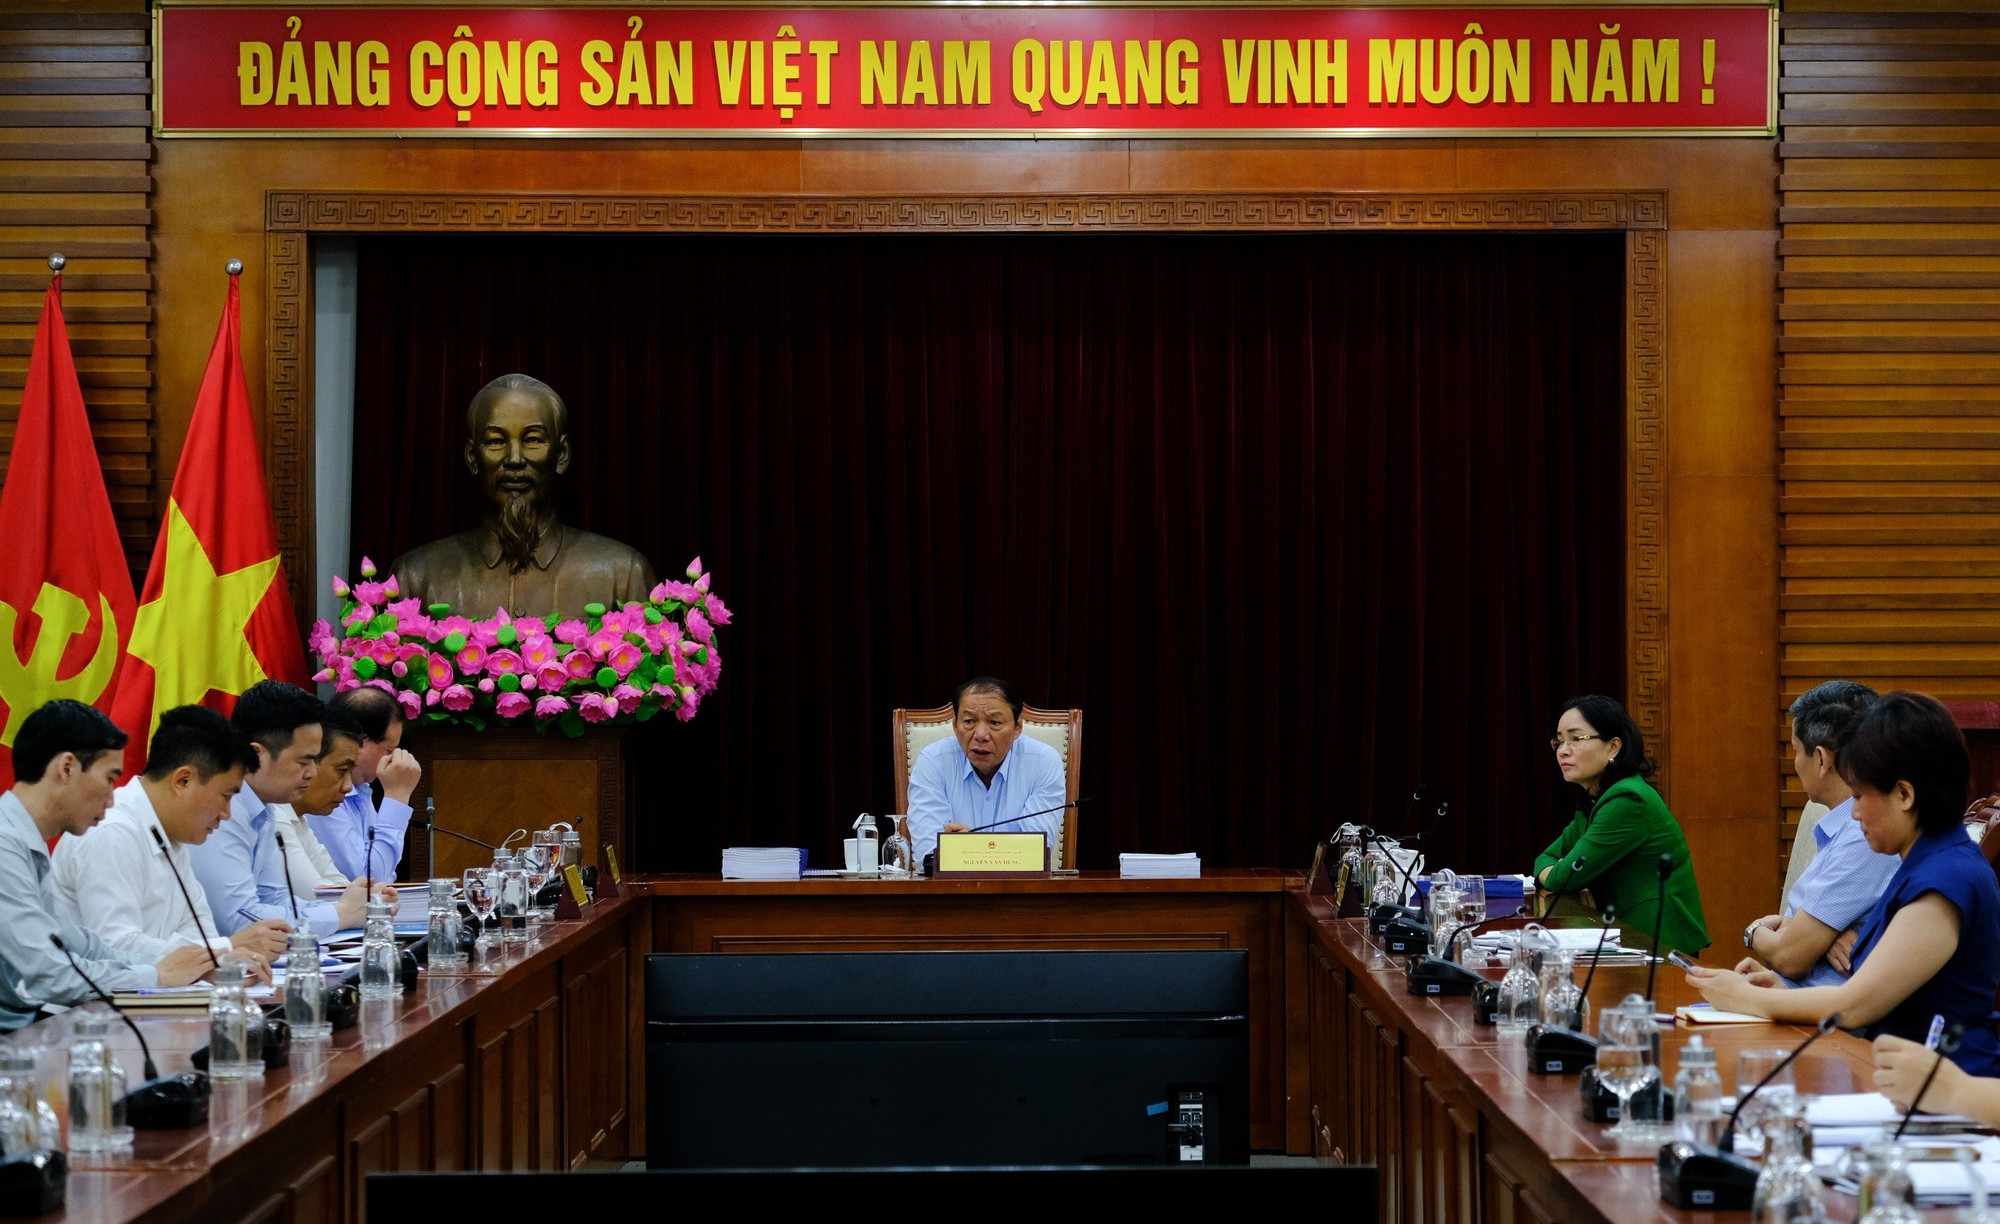 Bộ trưởng Nguyễn Văn Hùng: Chương trình nghệ thuật đặc biệt kỷ niệm 70 năm chiến thắng Điện Biên Phủ phải đảm bảo tính chính trị và nghệ thuật cao